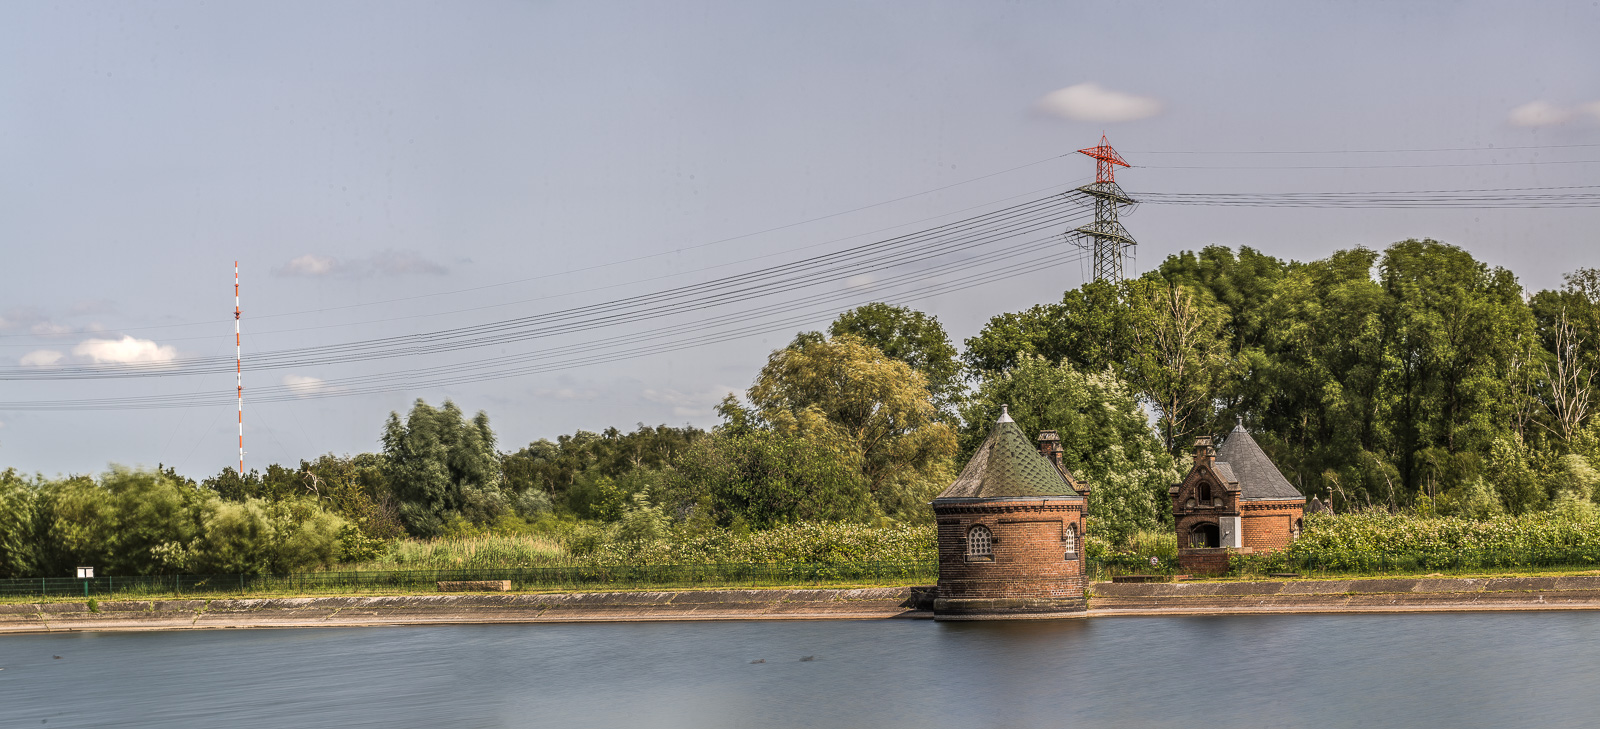 Wasserkunst Kaltehofe Hamburg: Vorn ein Wasserbecken, zwei Häuschen, dahinter Wald, am Horizont ein Strommast und ein weiß-rotes Funkfeuer